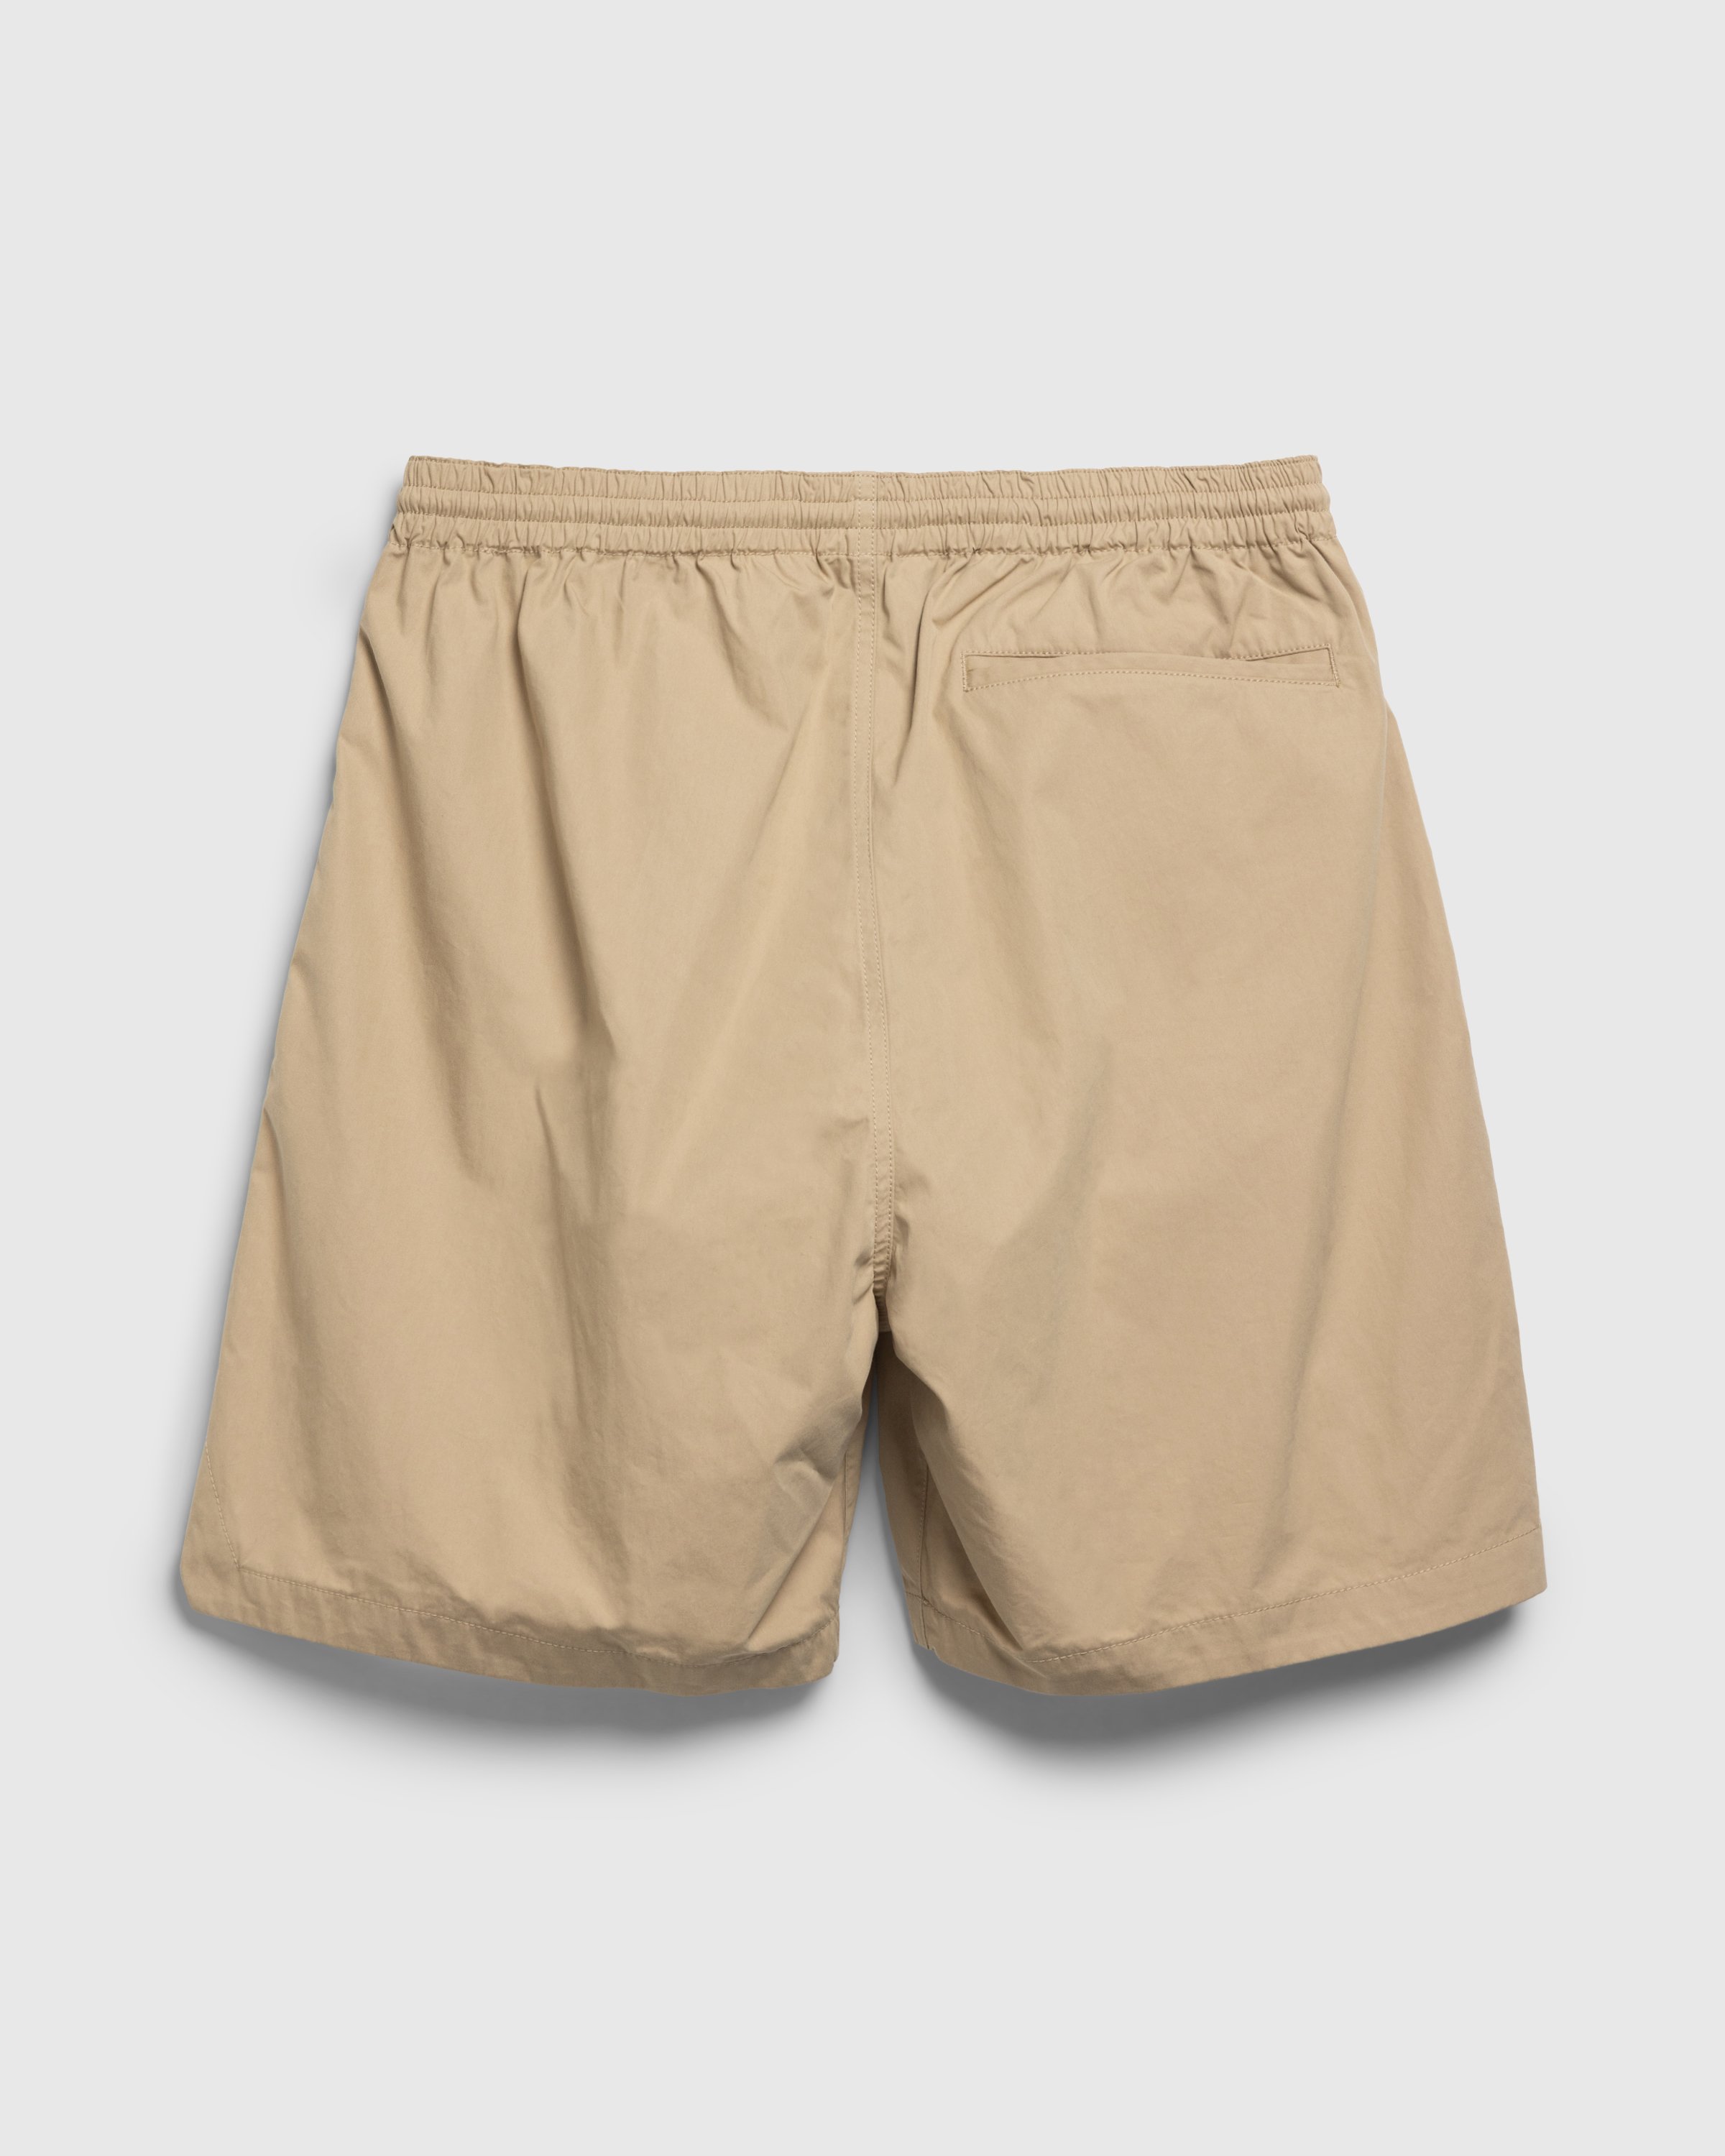 Highsnobiety HS05 - Weather Cloth Nylon Shorts - Clothing - Beige - Image 2